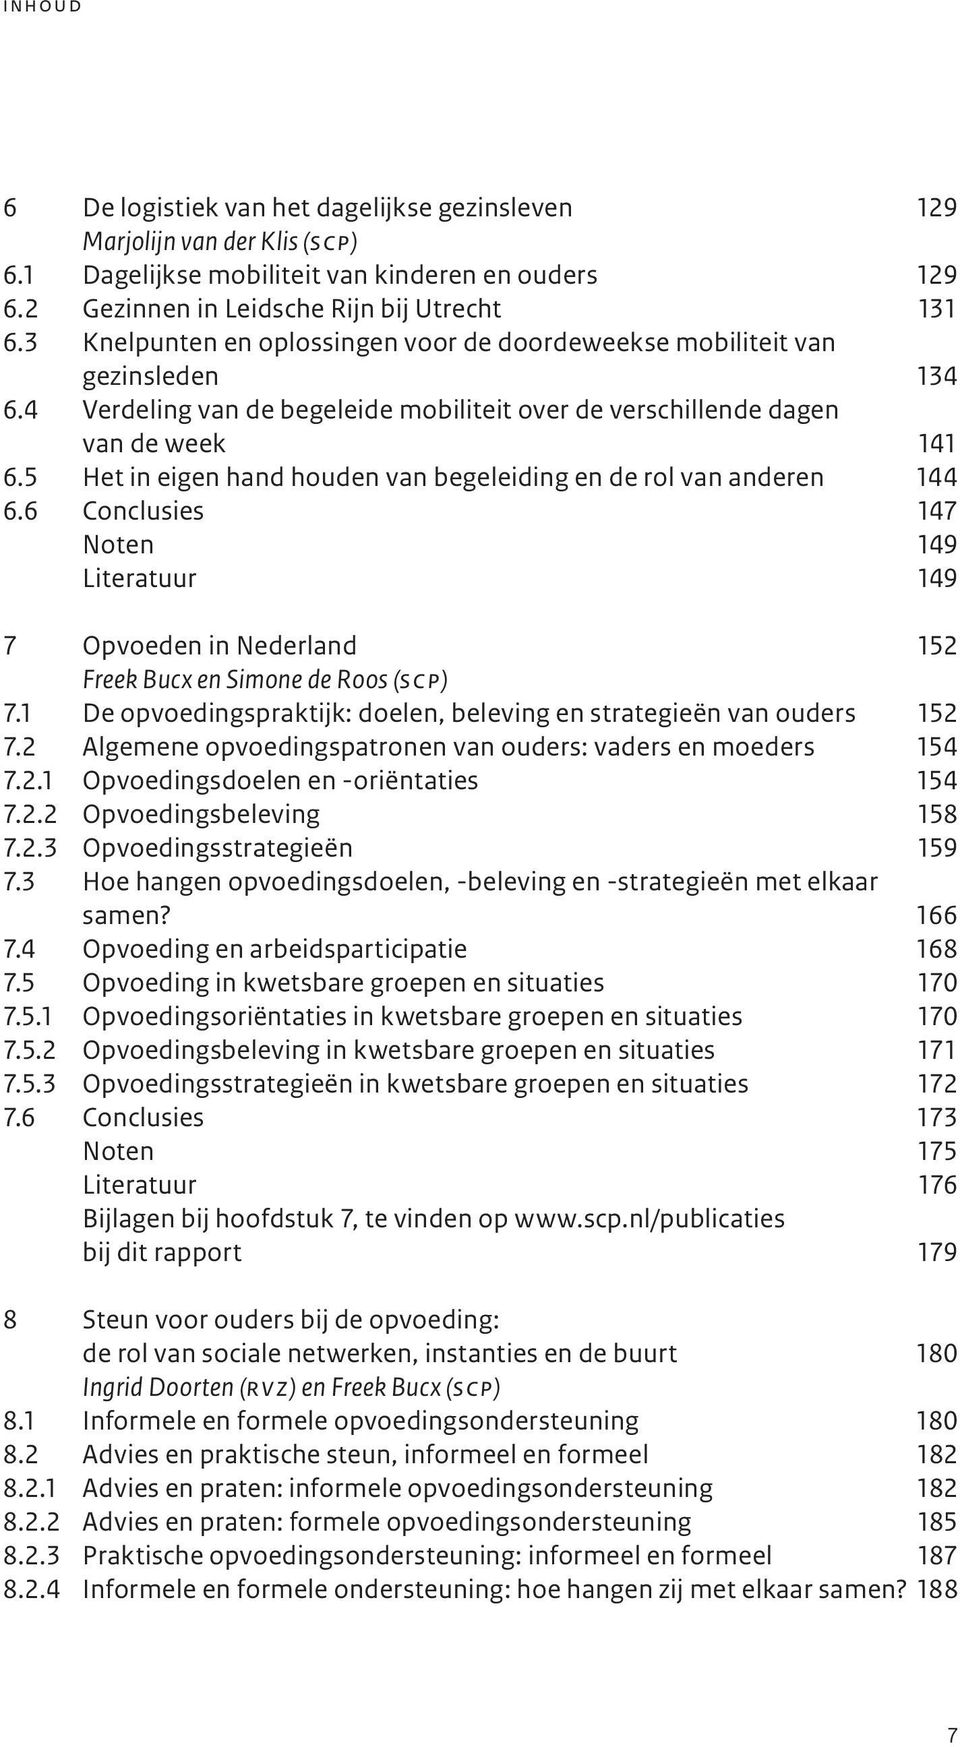 5 Het in eigen hand houden van begeleiding en de rol van anderen 144 6.6 Conclusies 147 Noten 149 Literatuur 149 7 Opvoeden in Nederland 152 Freek Bucx en Simone de Roos (s c p) 7.